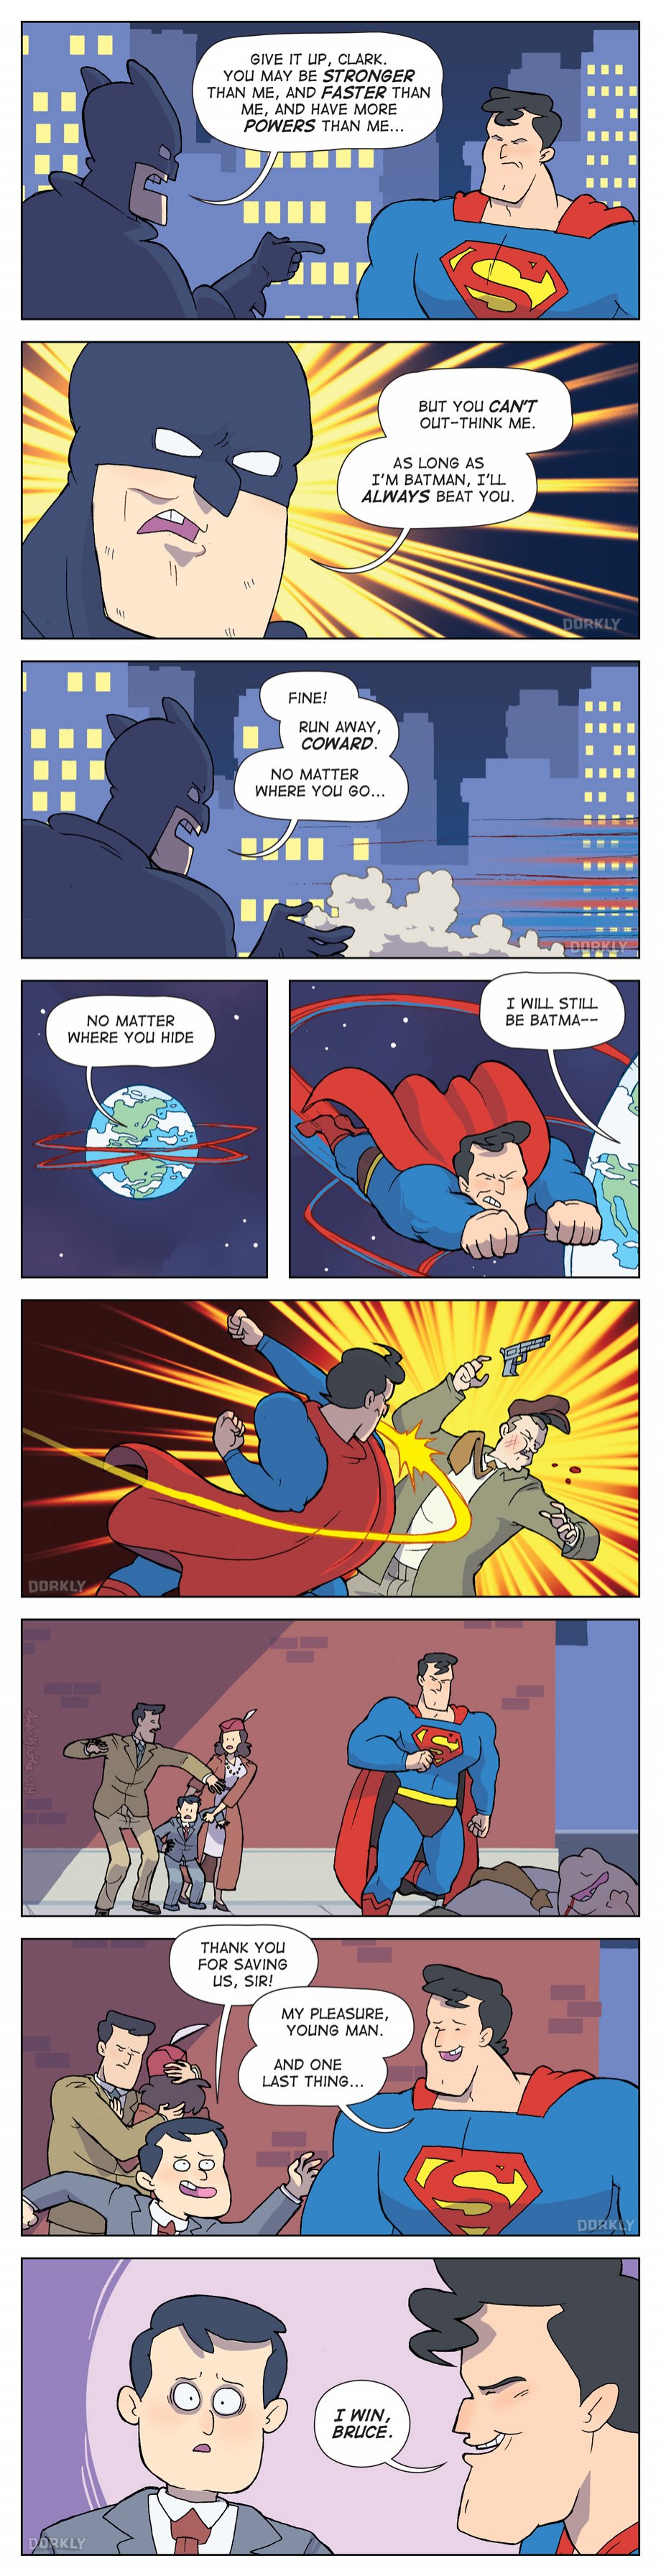 When superman outsmarts batman